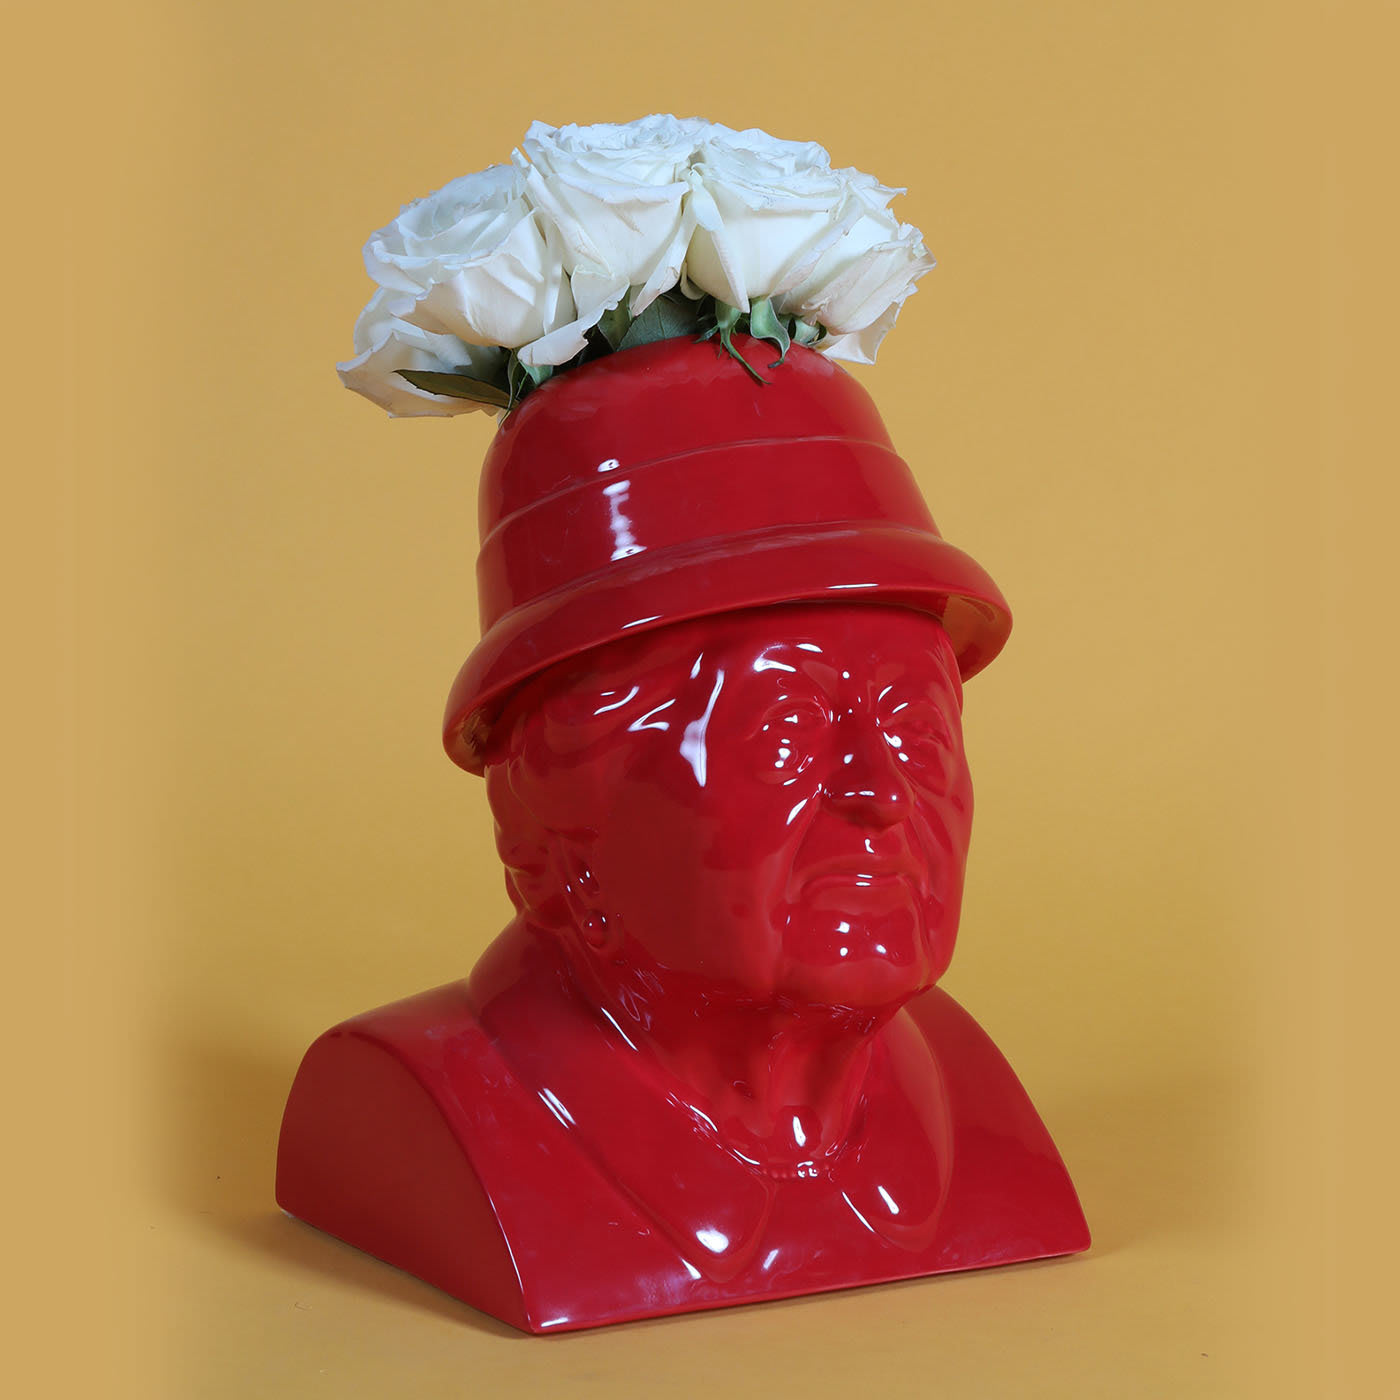 La Gisella Red Flowerpot by Jimmy D Lanza - Loopo